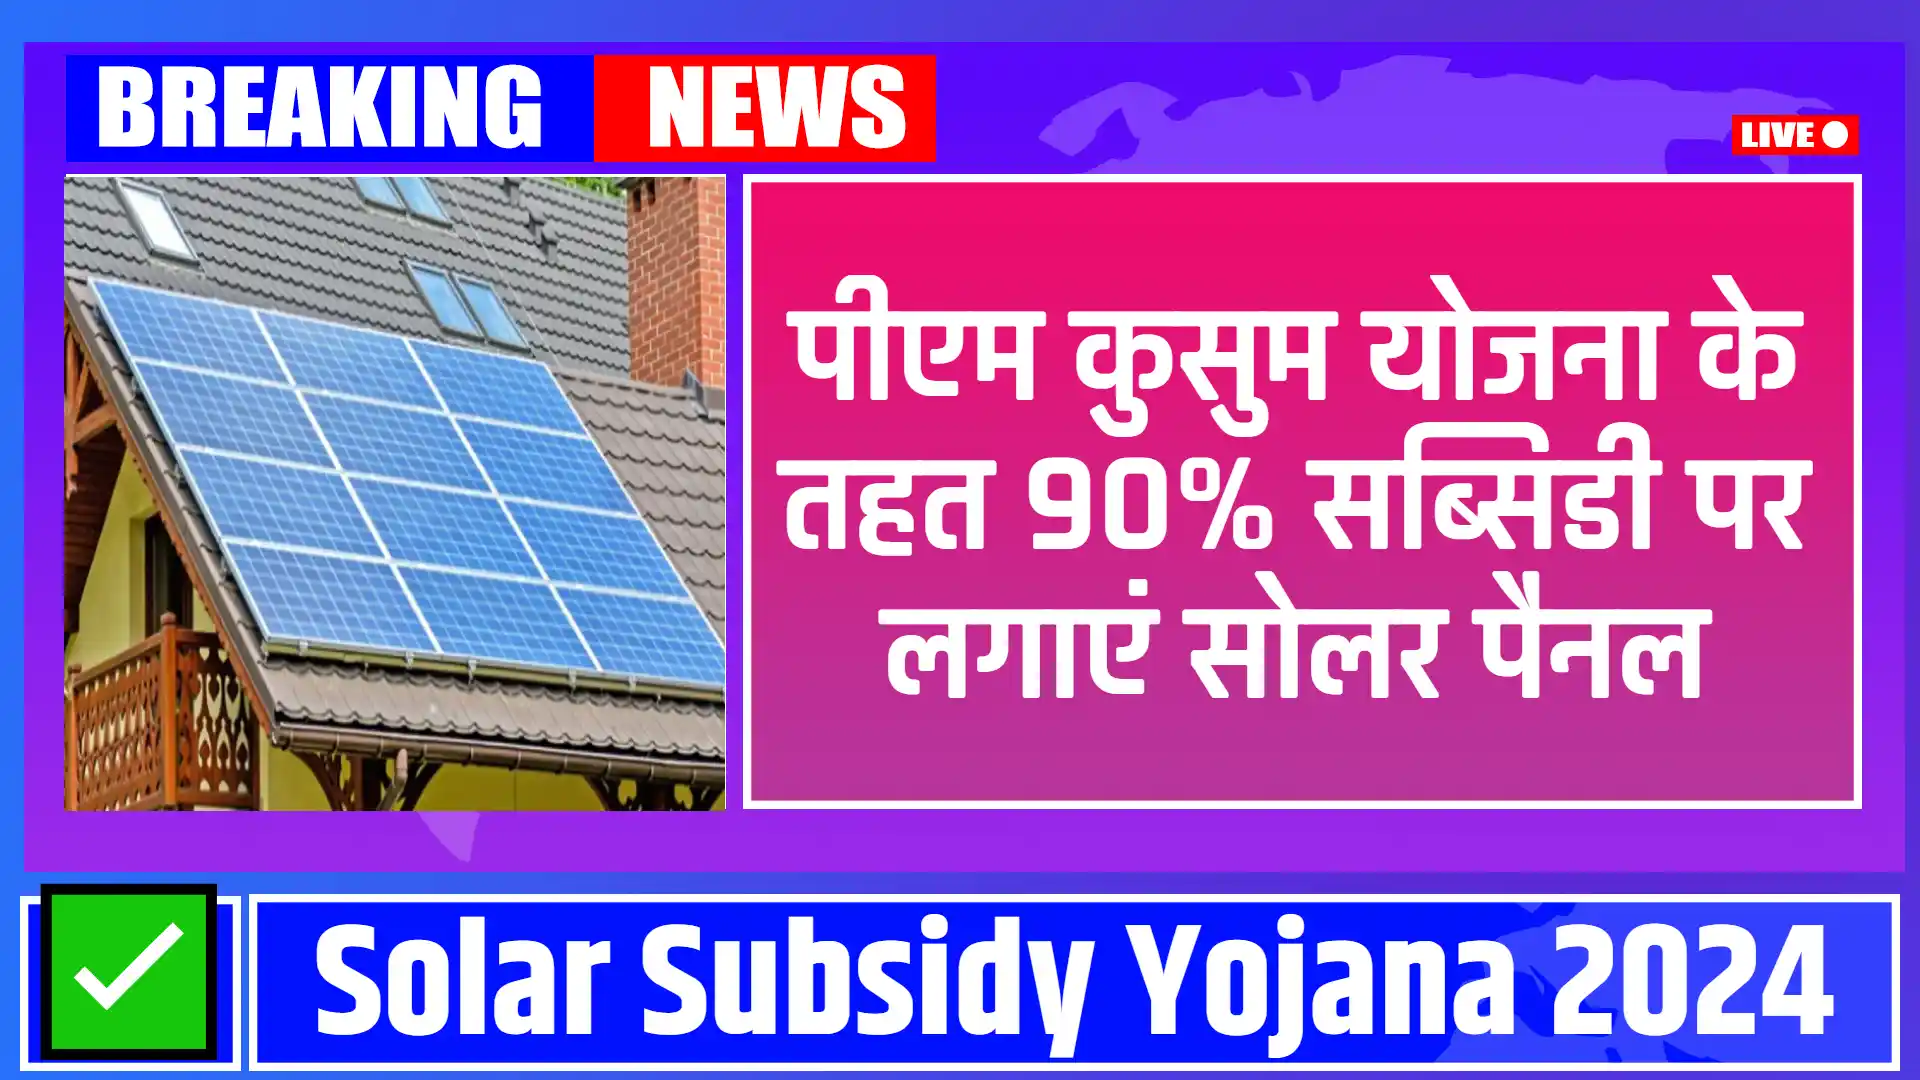 Solar Subsidy Yojana 2024: पीएम कुसुम योजना में जल्दी करे रजिस्टर और पाए 90% सब्सिडी में सोलर पैनल लगाने का मौका